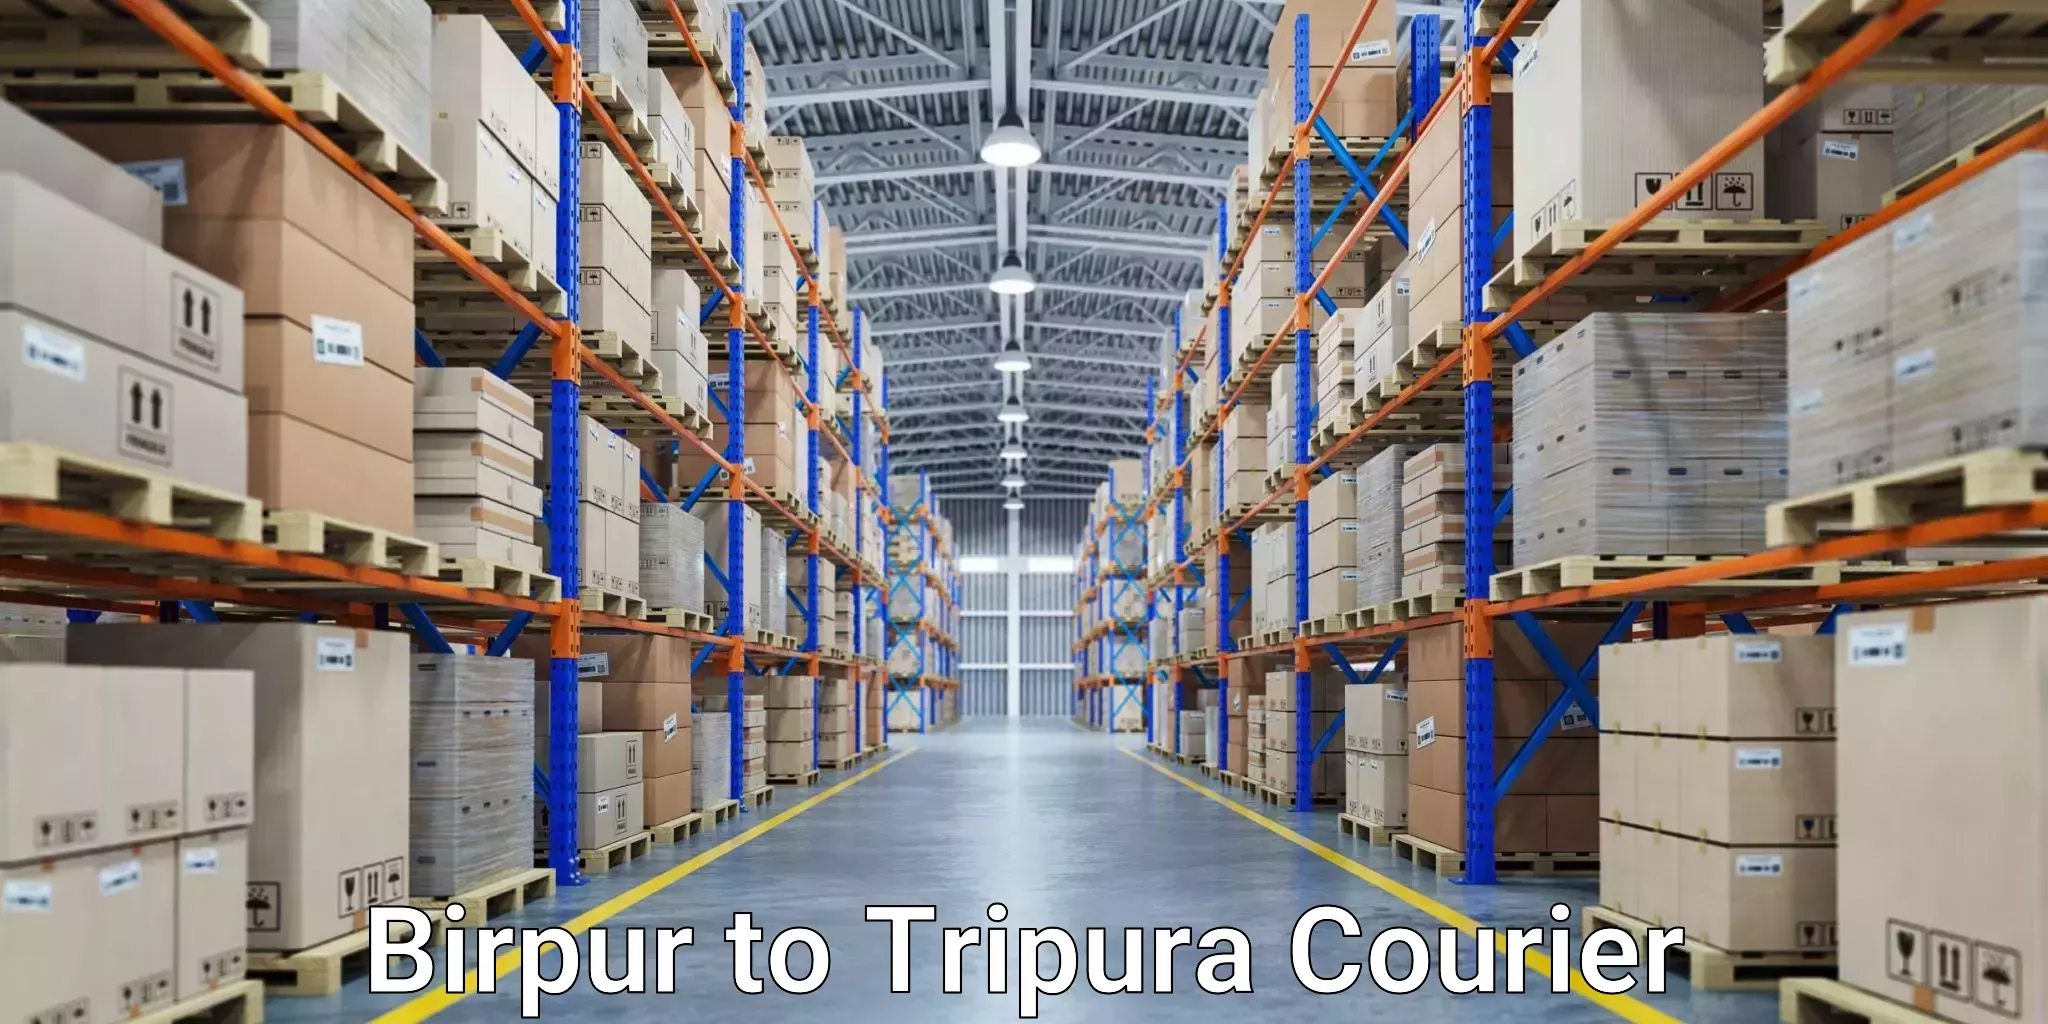 Modern courier technology Birpur to Manu Bazar